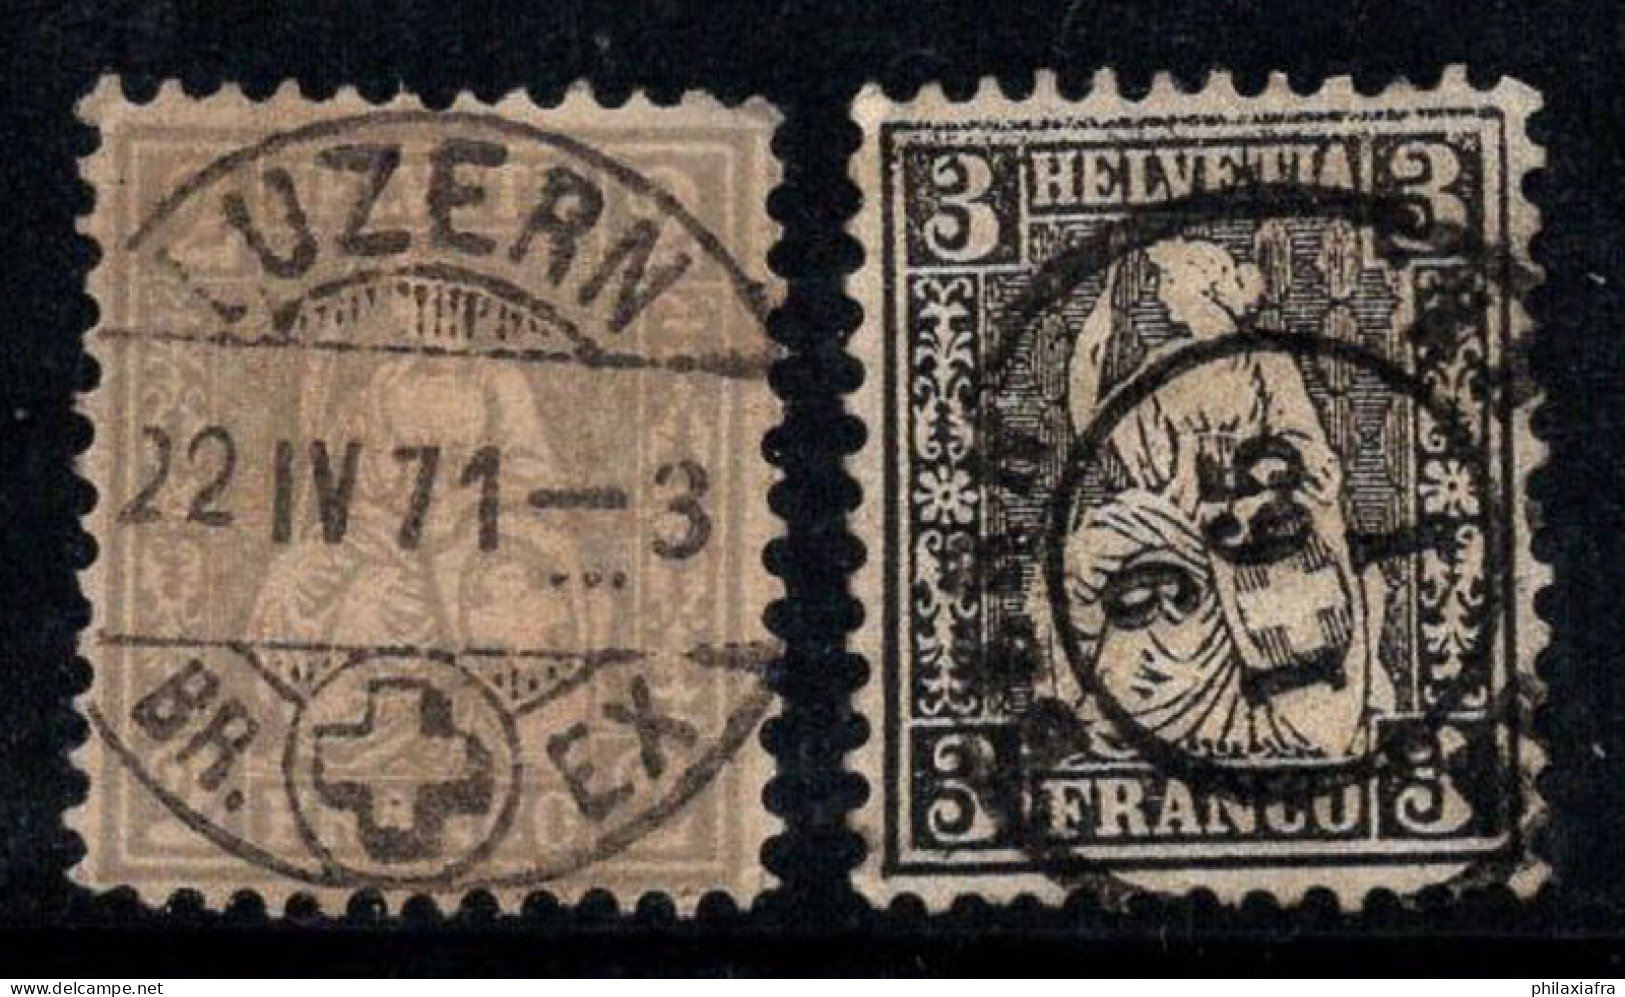 Suisse 1862 Mi. 20-21 Oblitéré 100% Helvetia Assis - Gebruikt